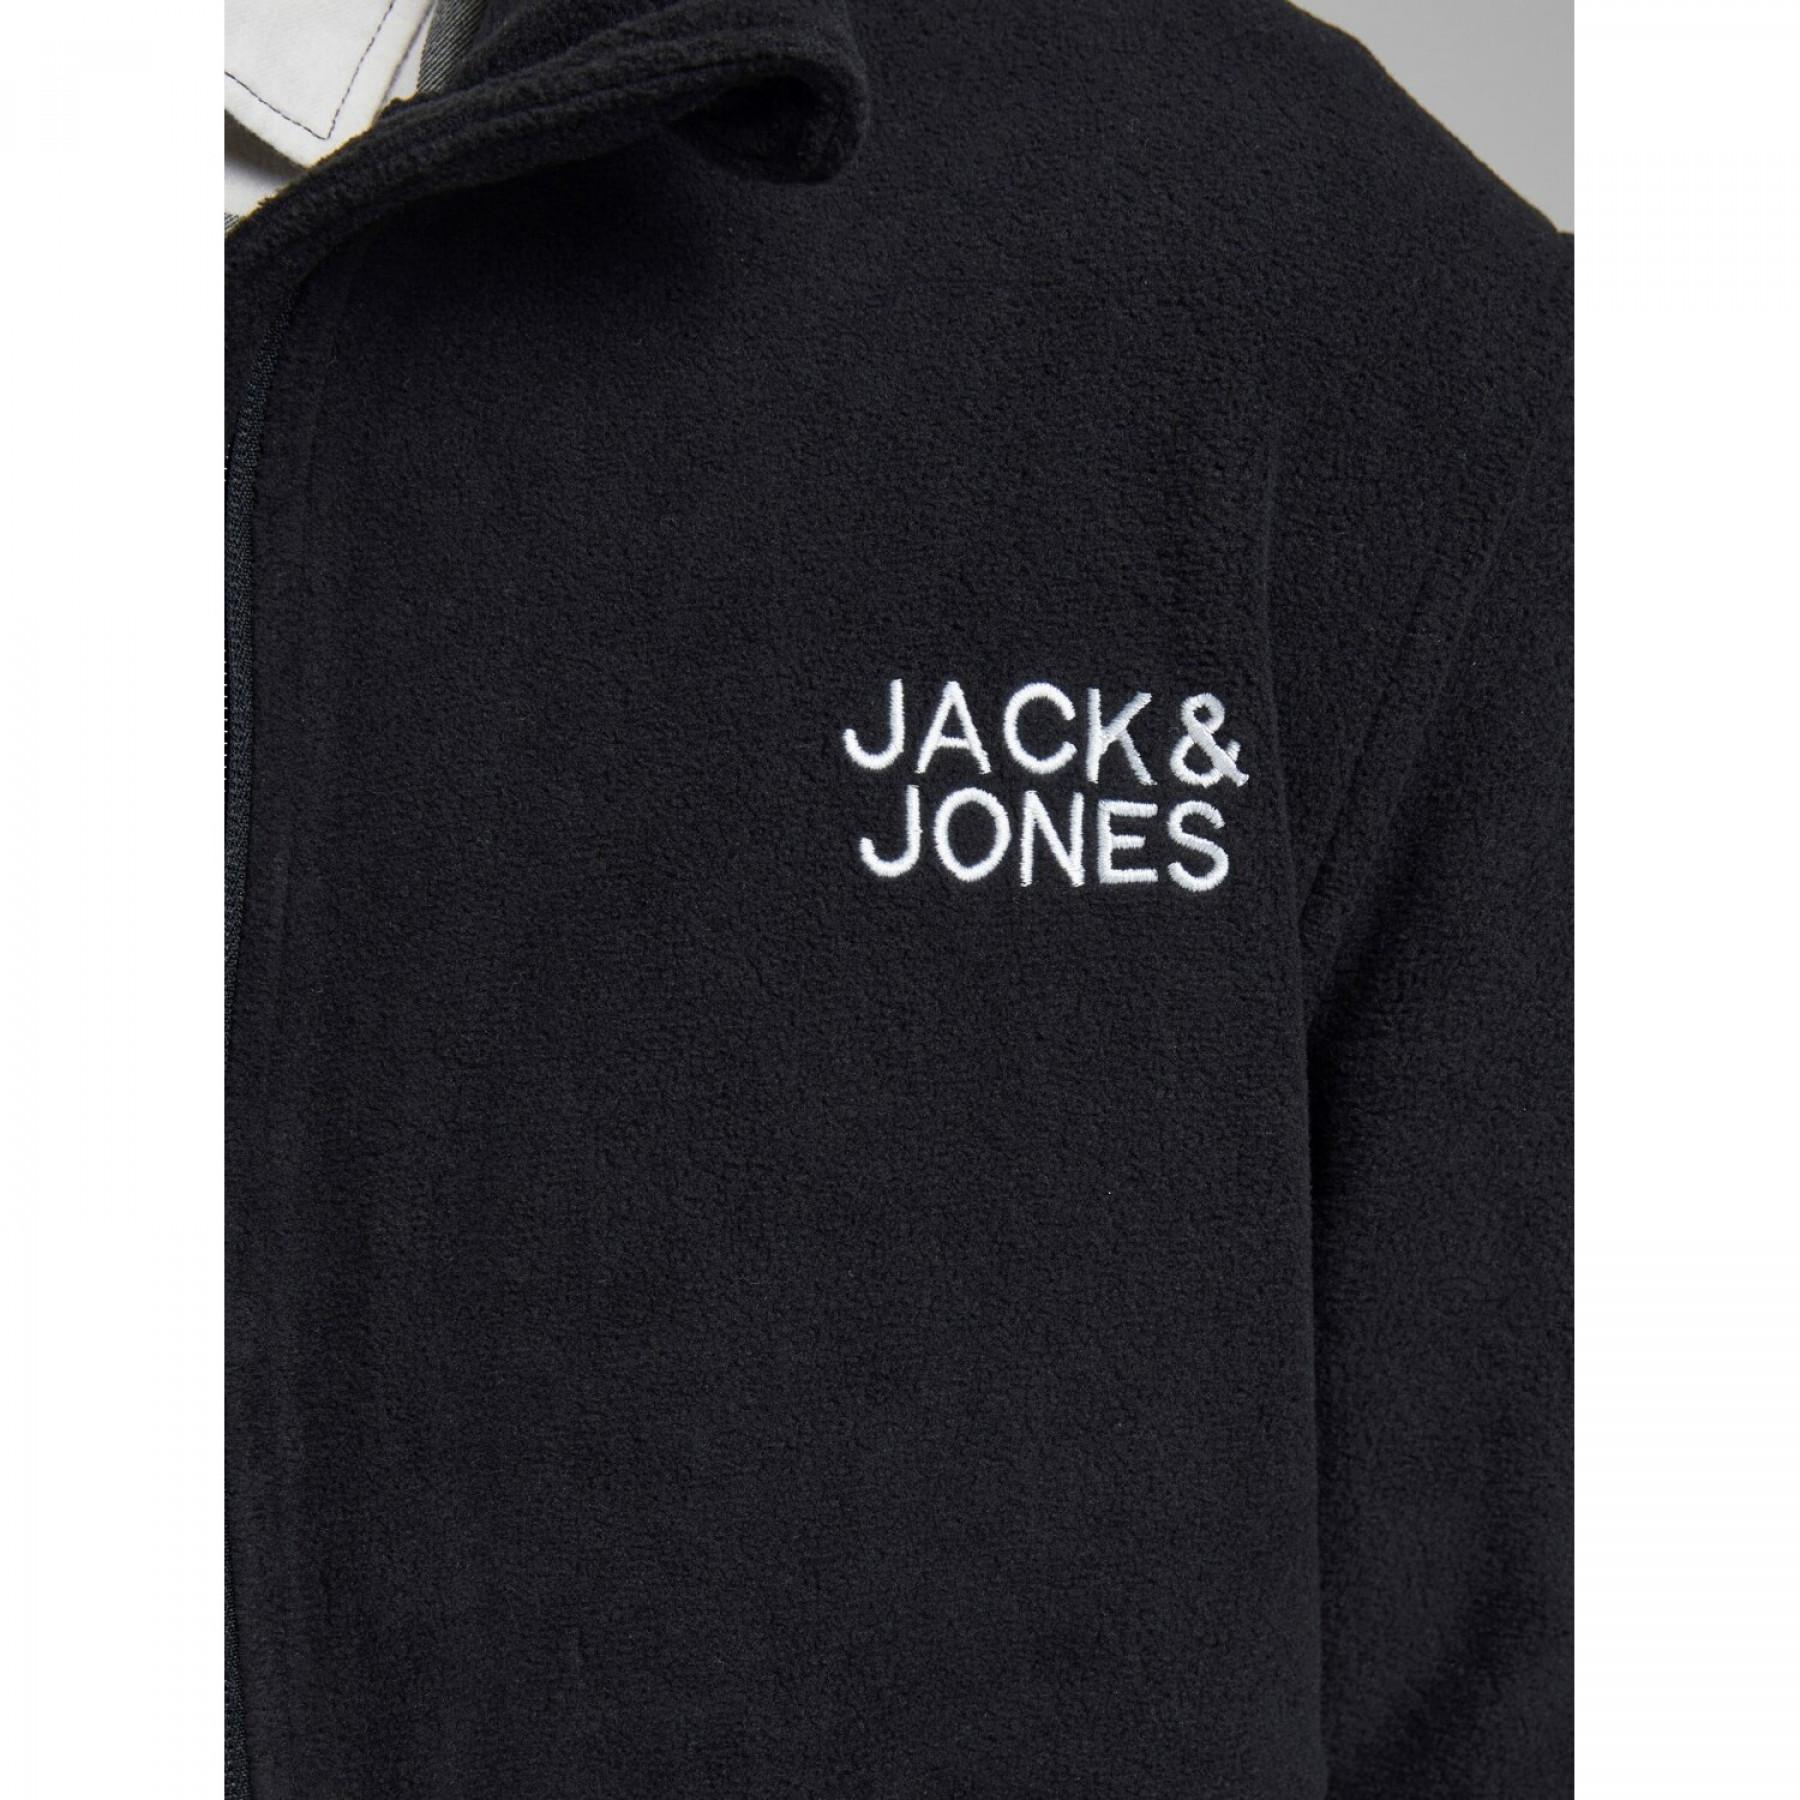 Giacca Jack & Jones Hype Fleece